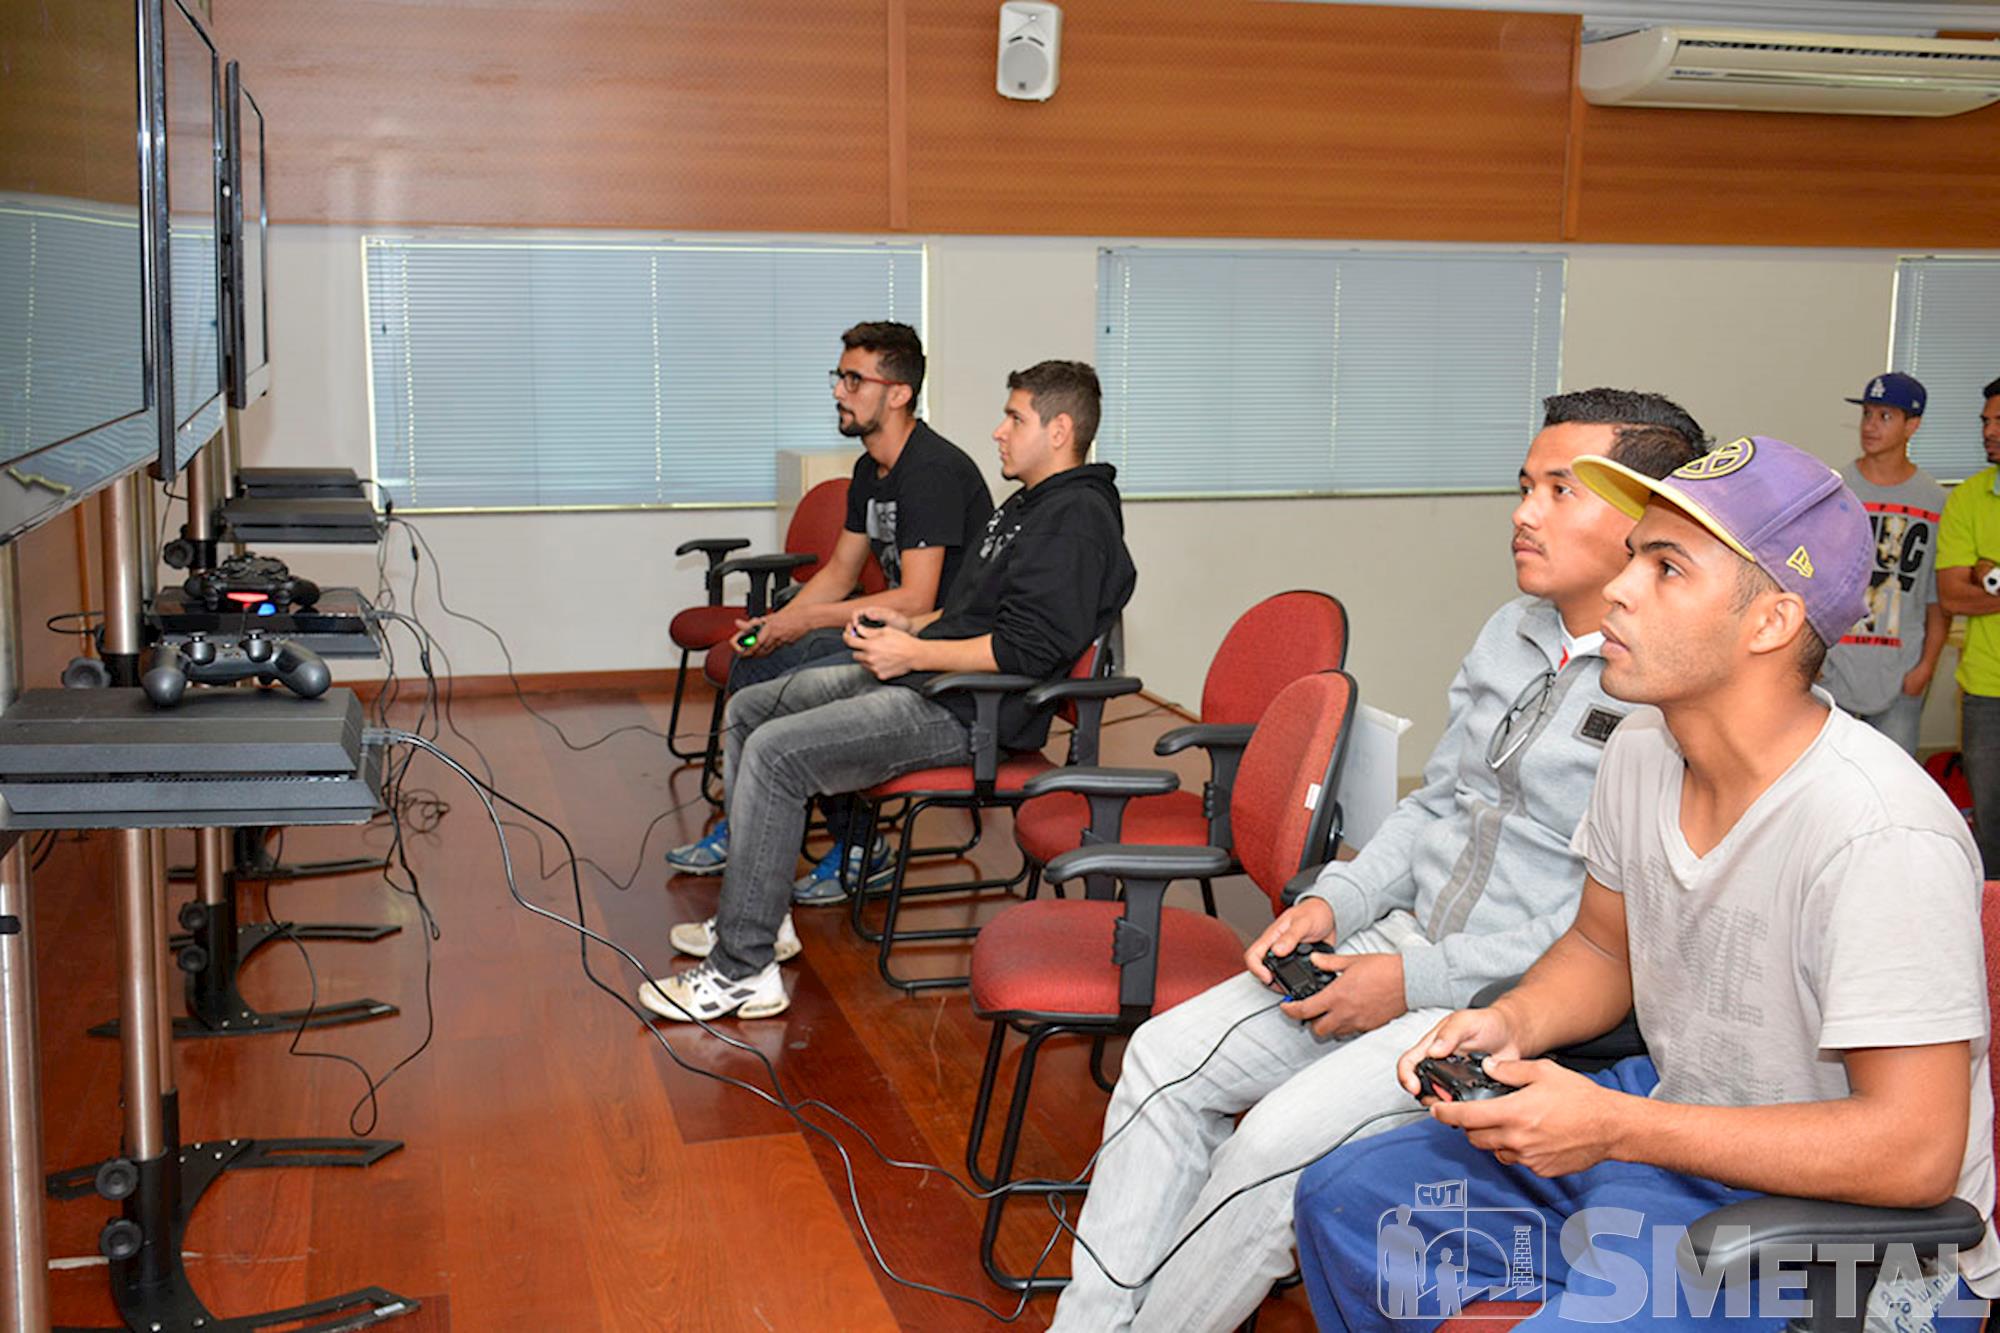 Estudante Jean Ferreira é bicampeão do Torneio de Futgame do SMetal